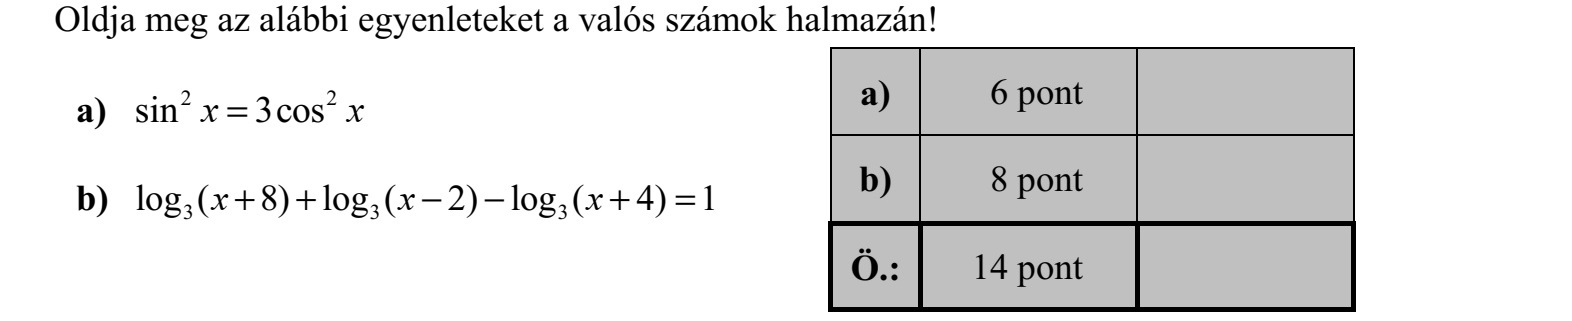 Oldja meg az alábbi egyenleteket a valós számok halmazán! a) 2 2 sin 3cosx x= b) 3 3 3log ( 8) log ( 2) log ( 4) 1+ +   +